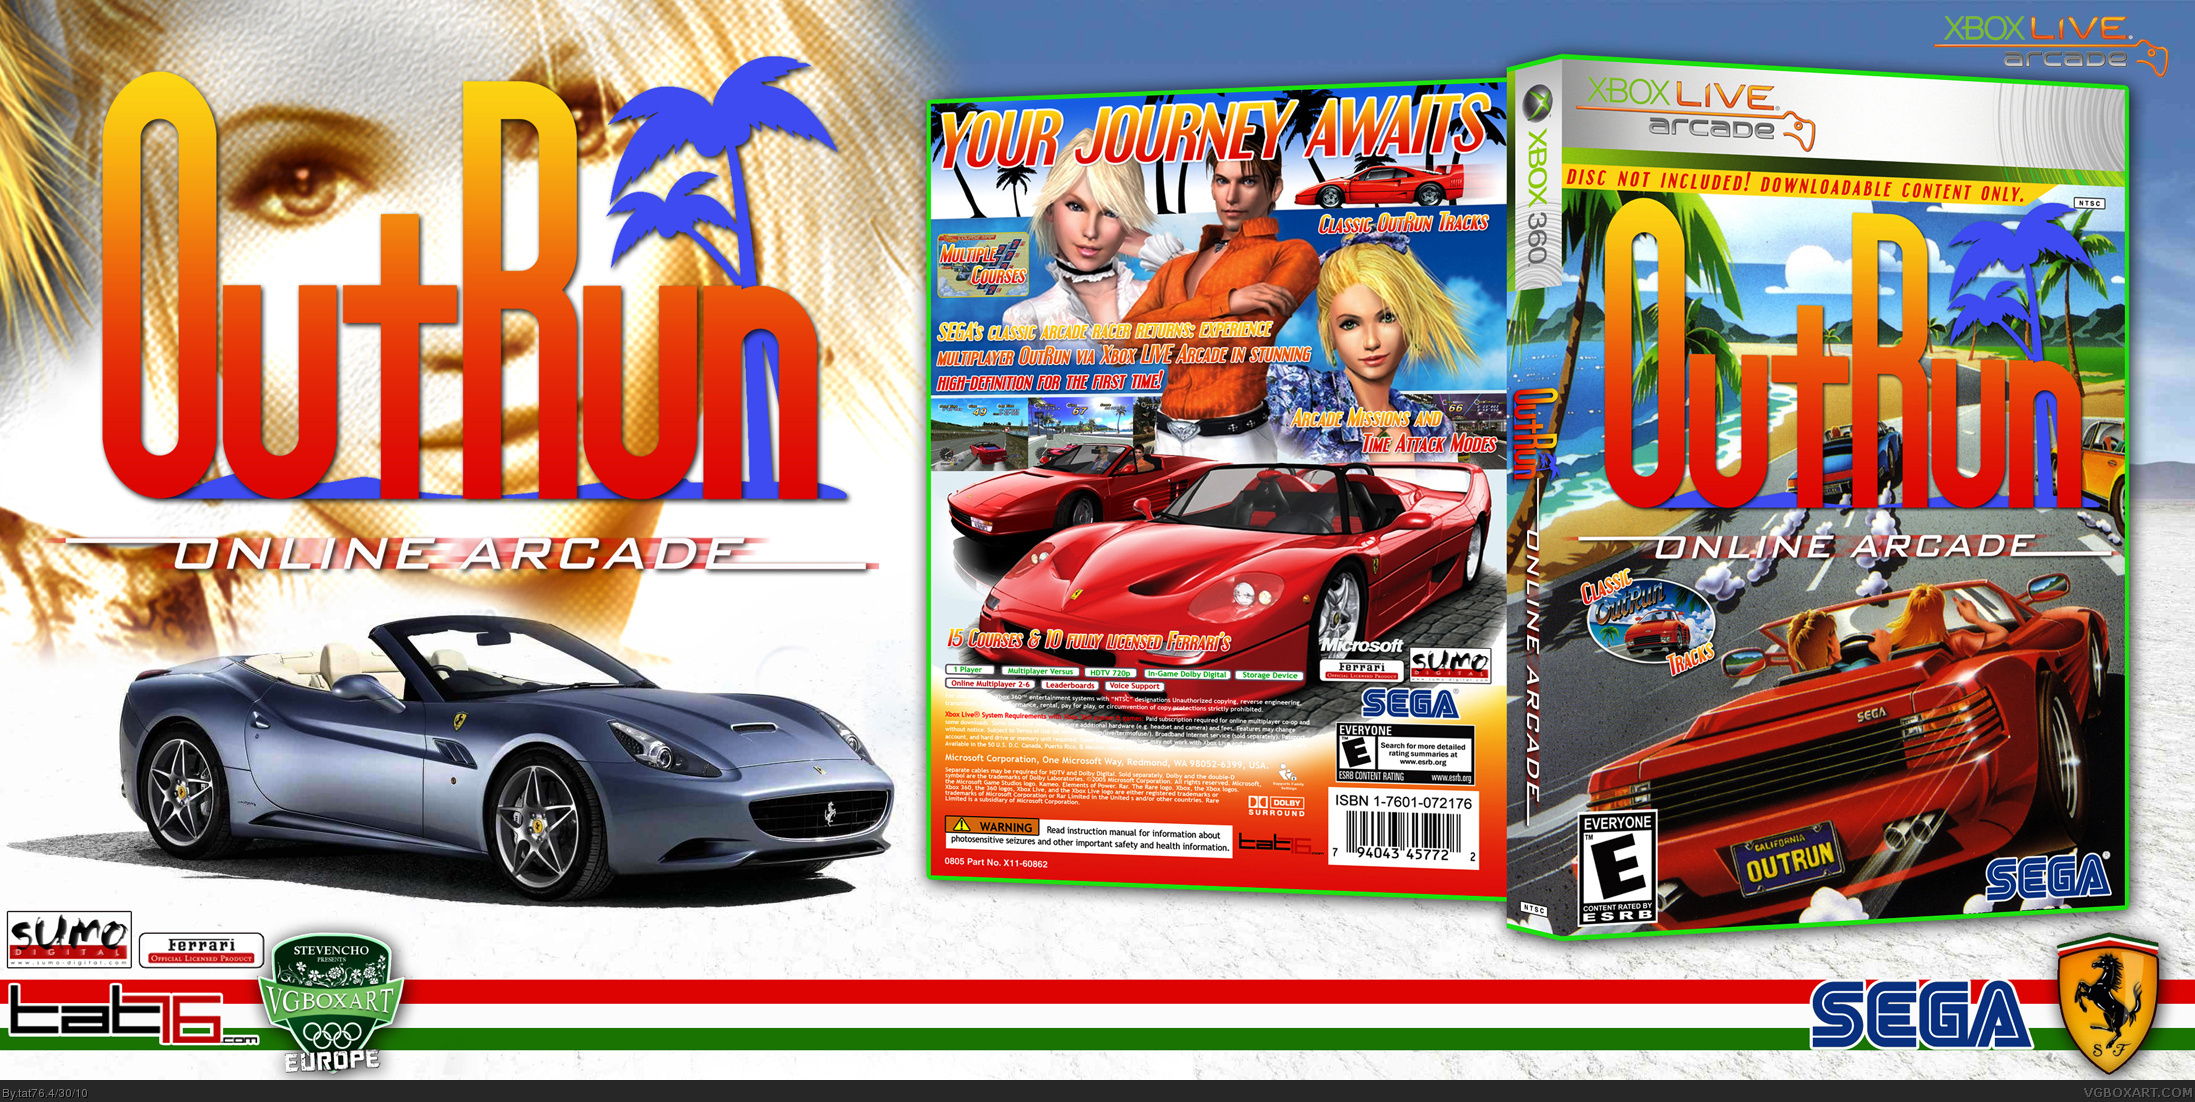 Outrun Online Arcade box cover